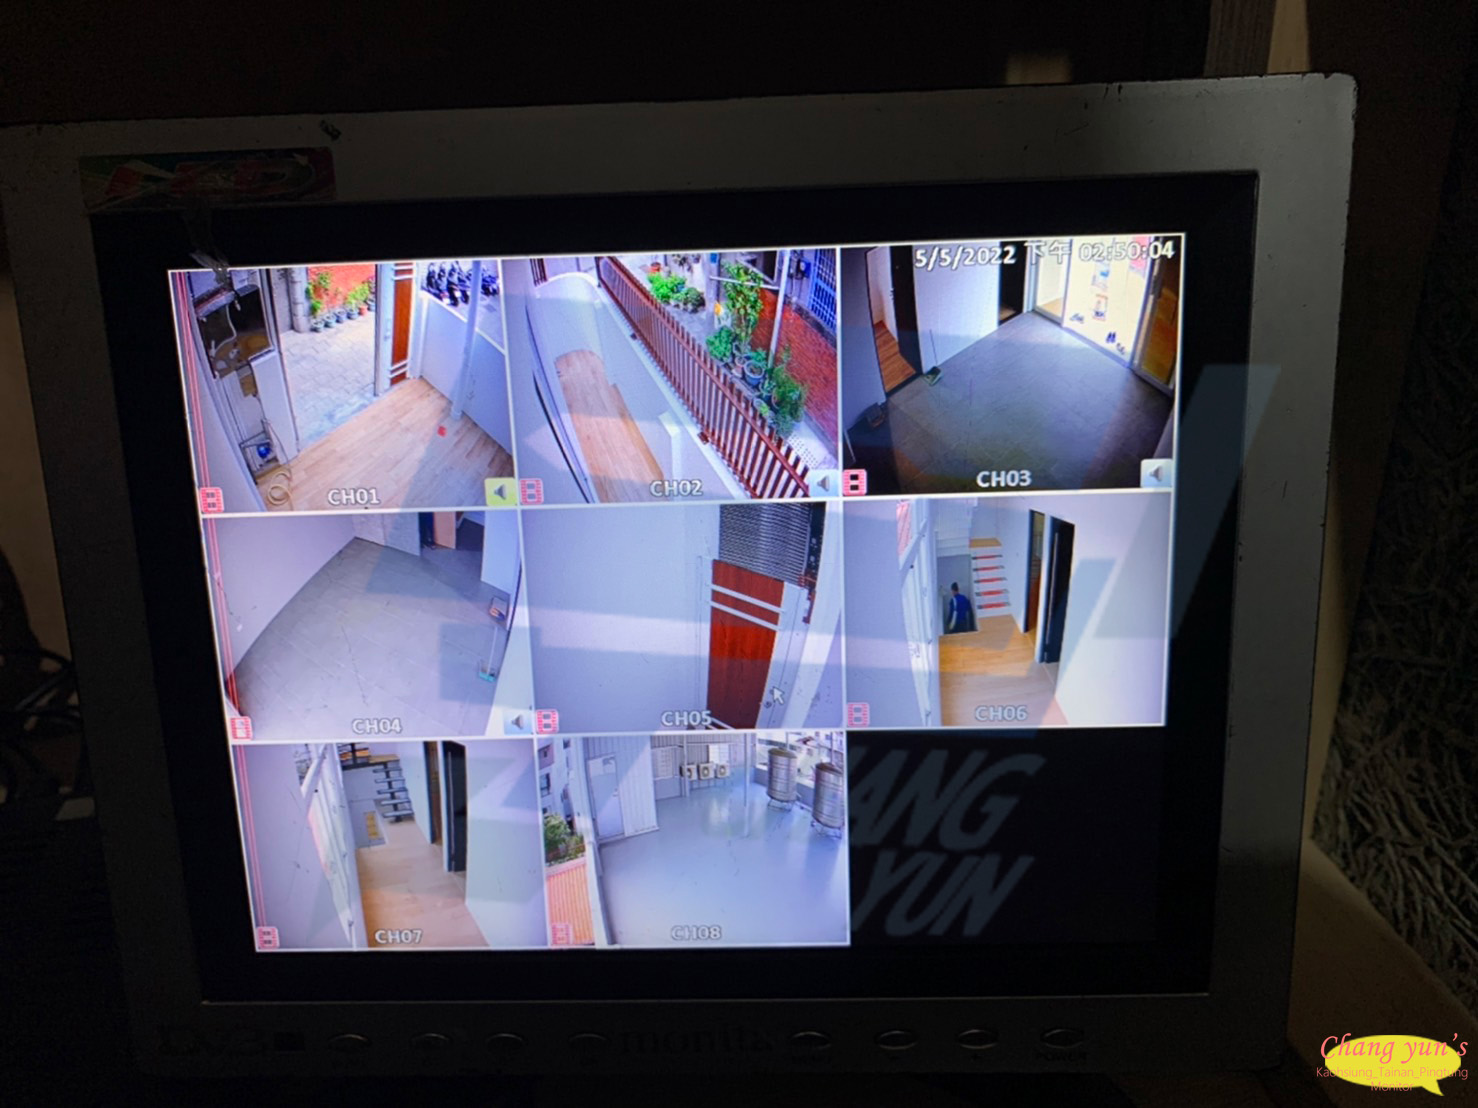 台南市中西區監視器安裝案例 監視系統推薦安裝廠商